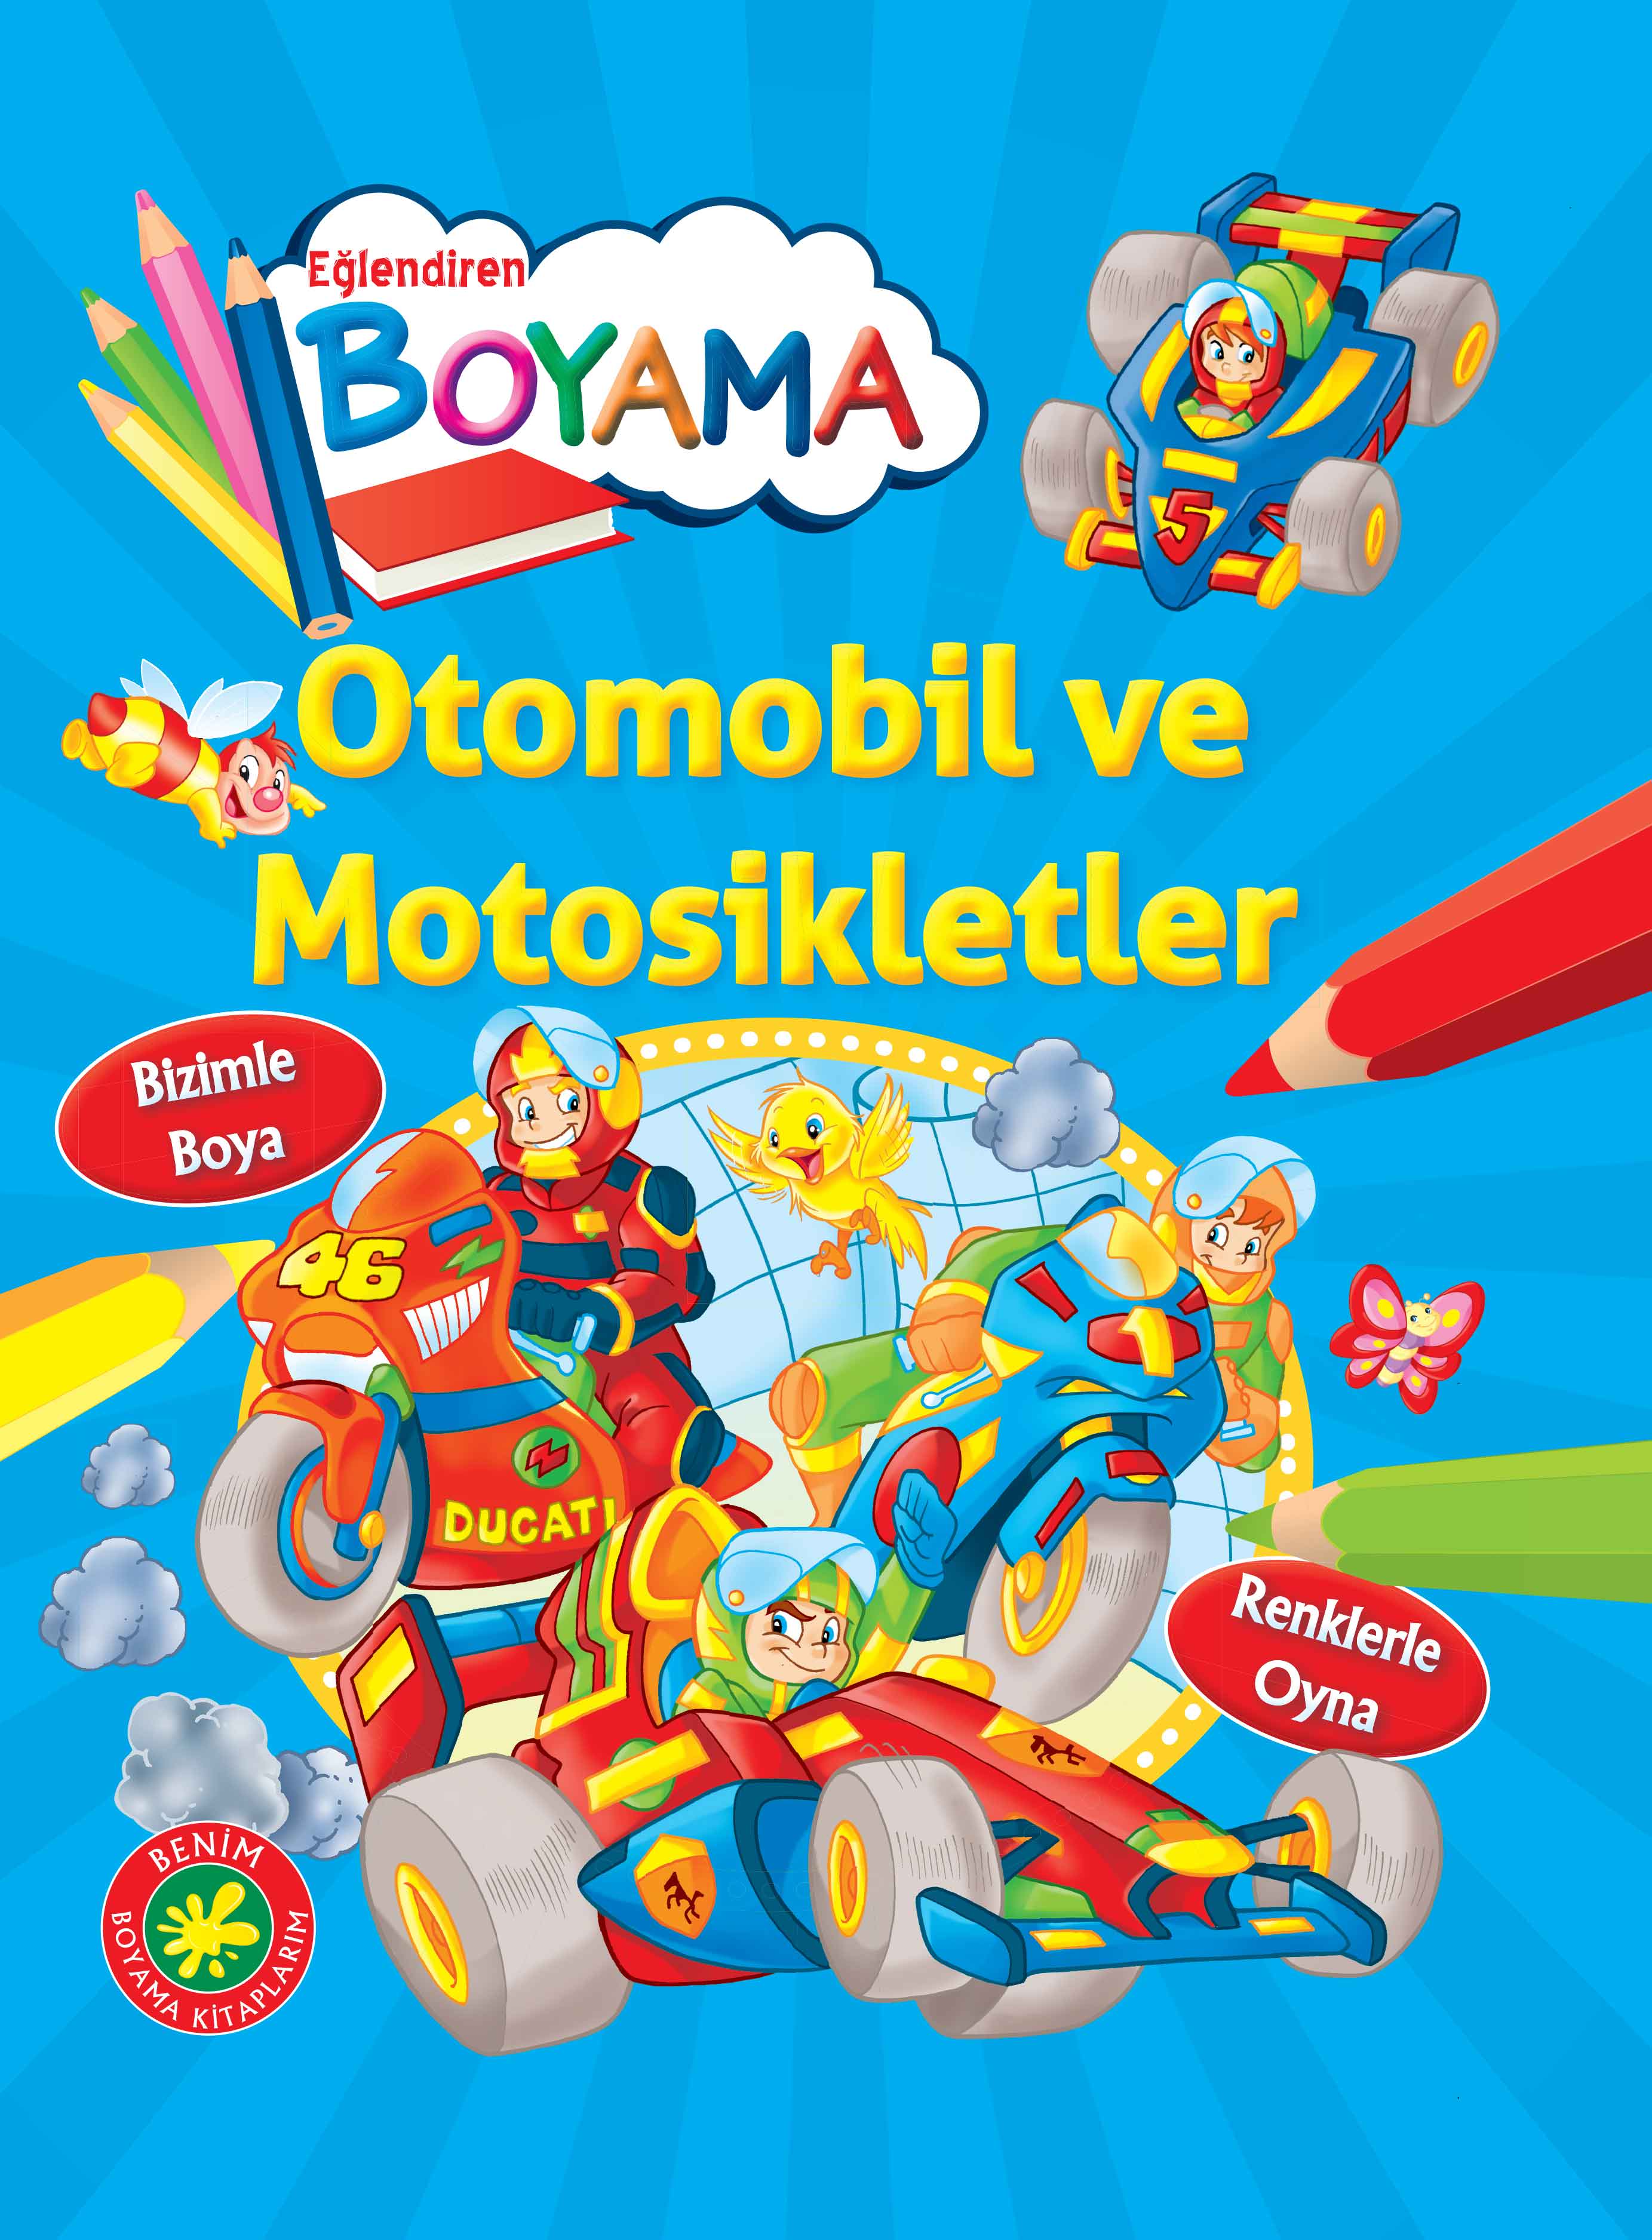 Eğlendiren Boyama - Otomobil ve Motosikletler